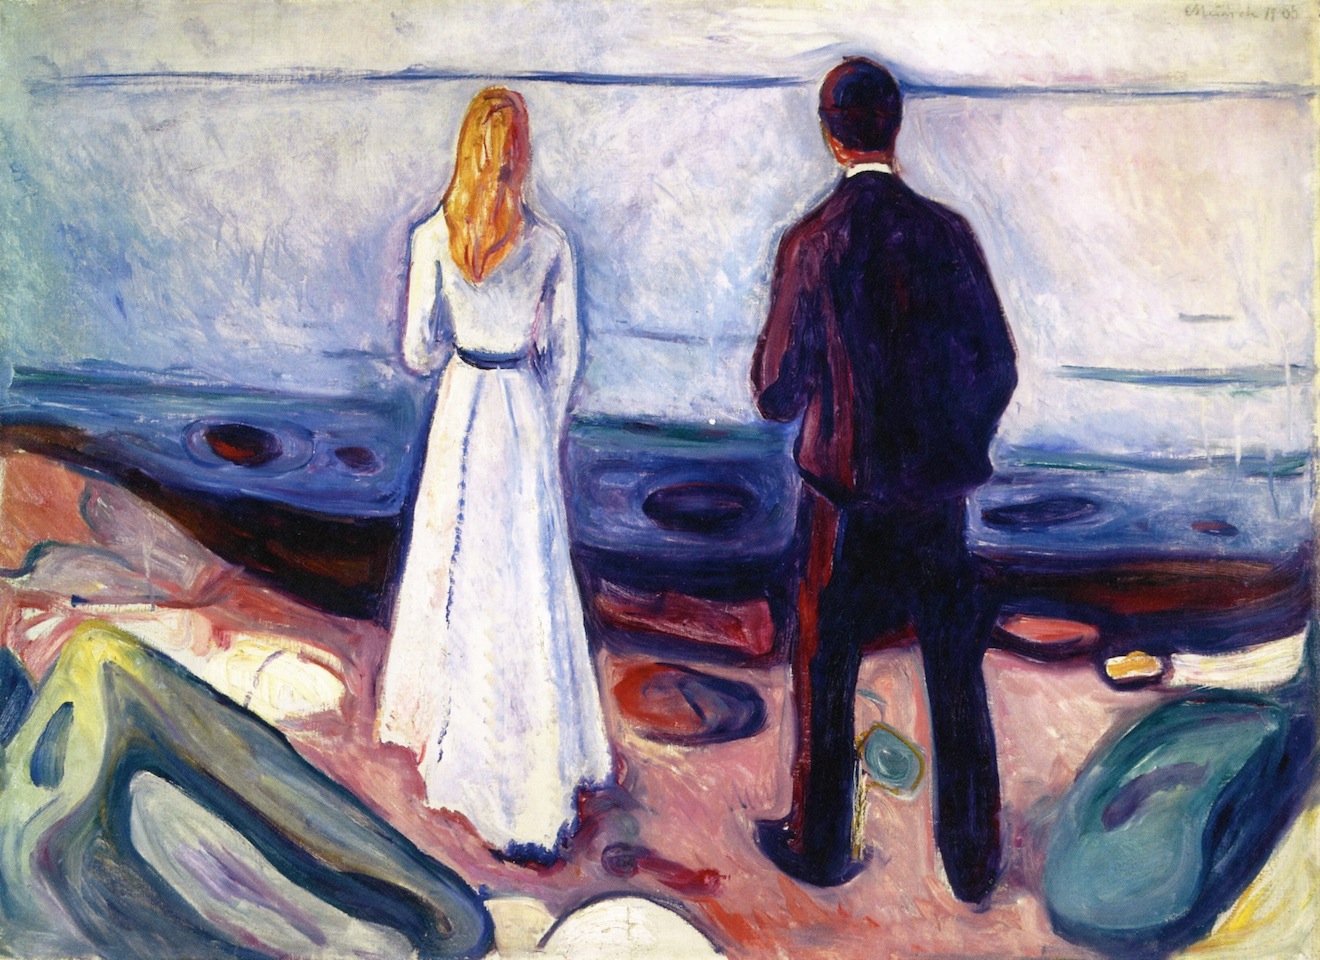 Twee Mensen (De Eenzamen) by Edvard Munch - 1898 - 80 × 110 cm 